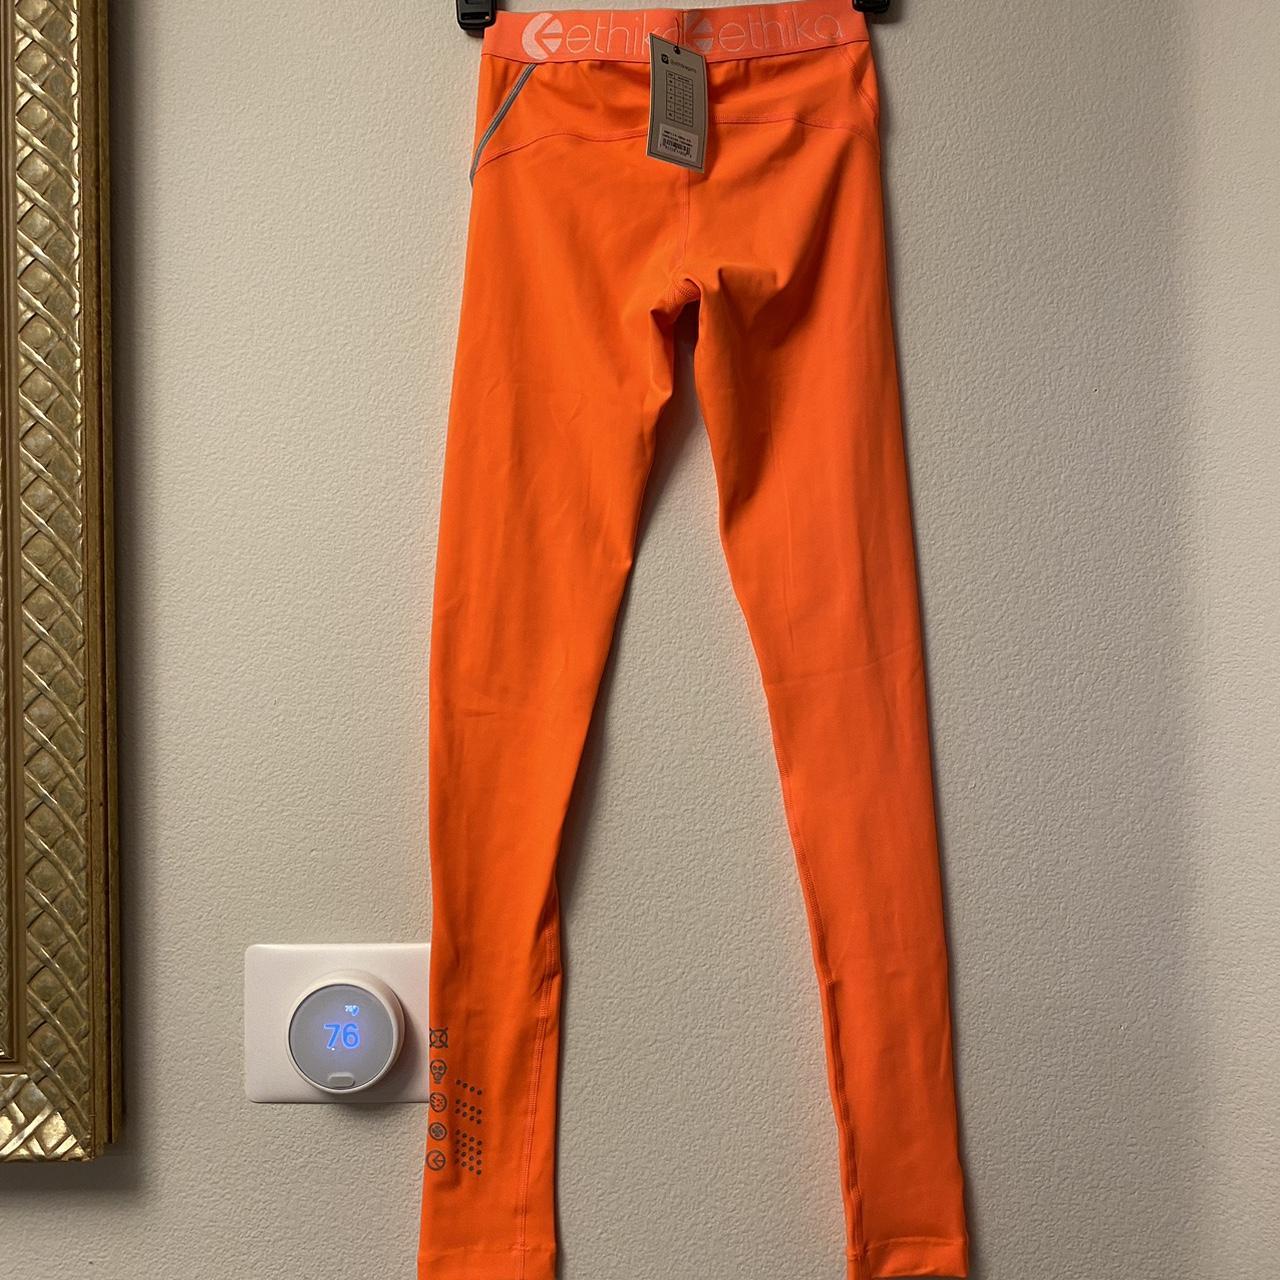 Ethika shorts #ethika #orange #lounge - Depop